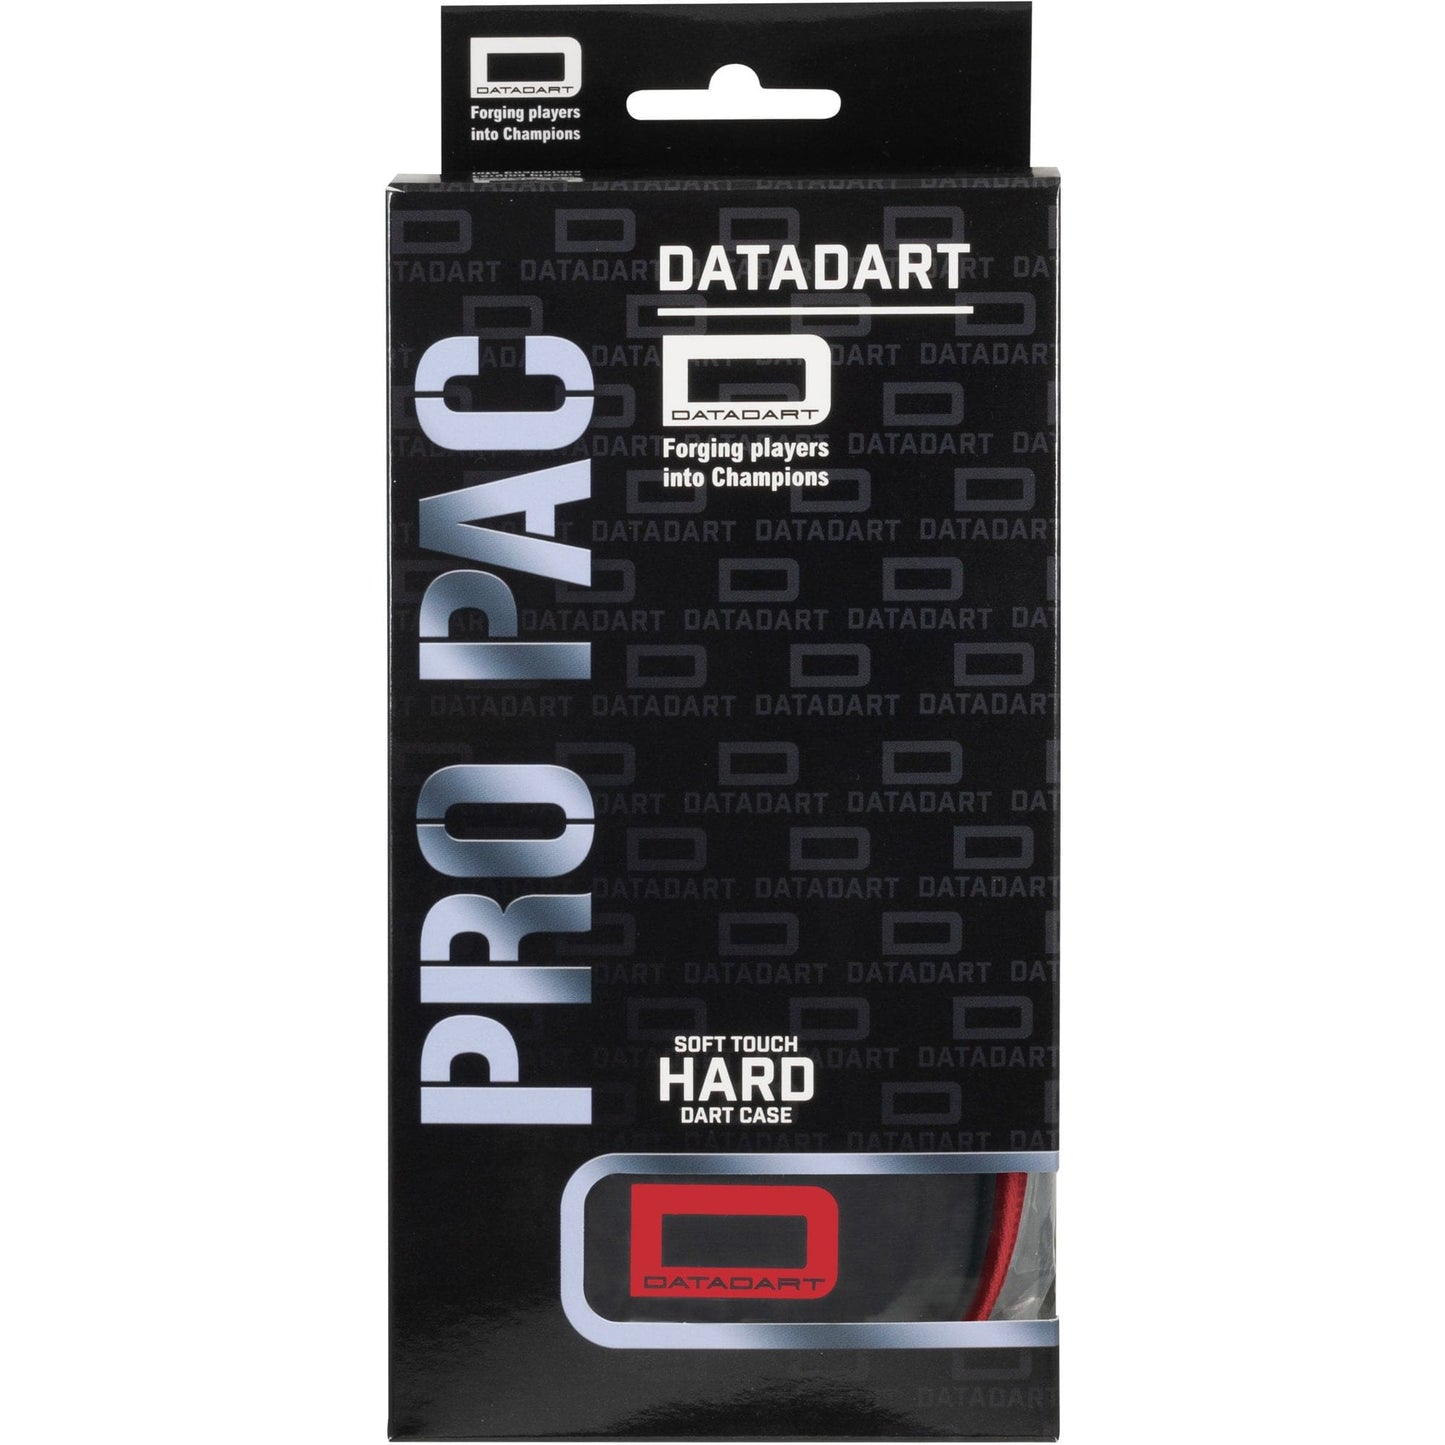 Datadart ProPac Dart Case - Strong EVA Case